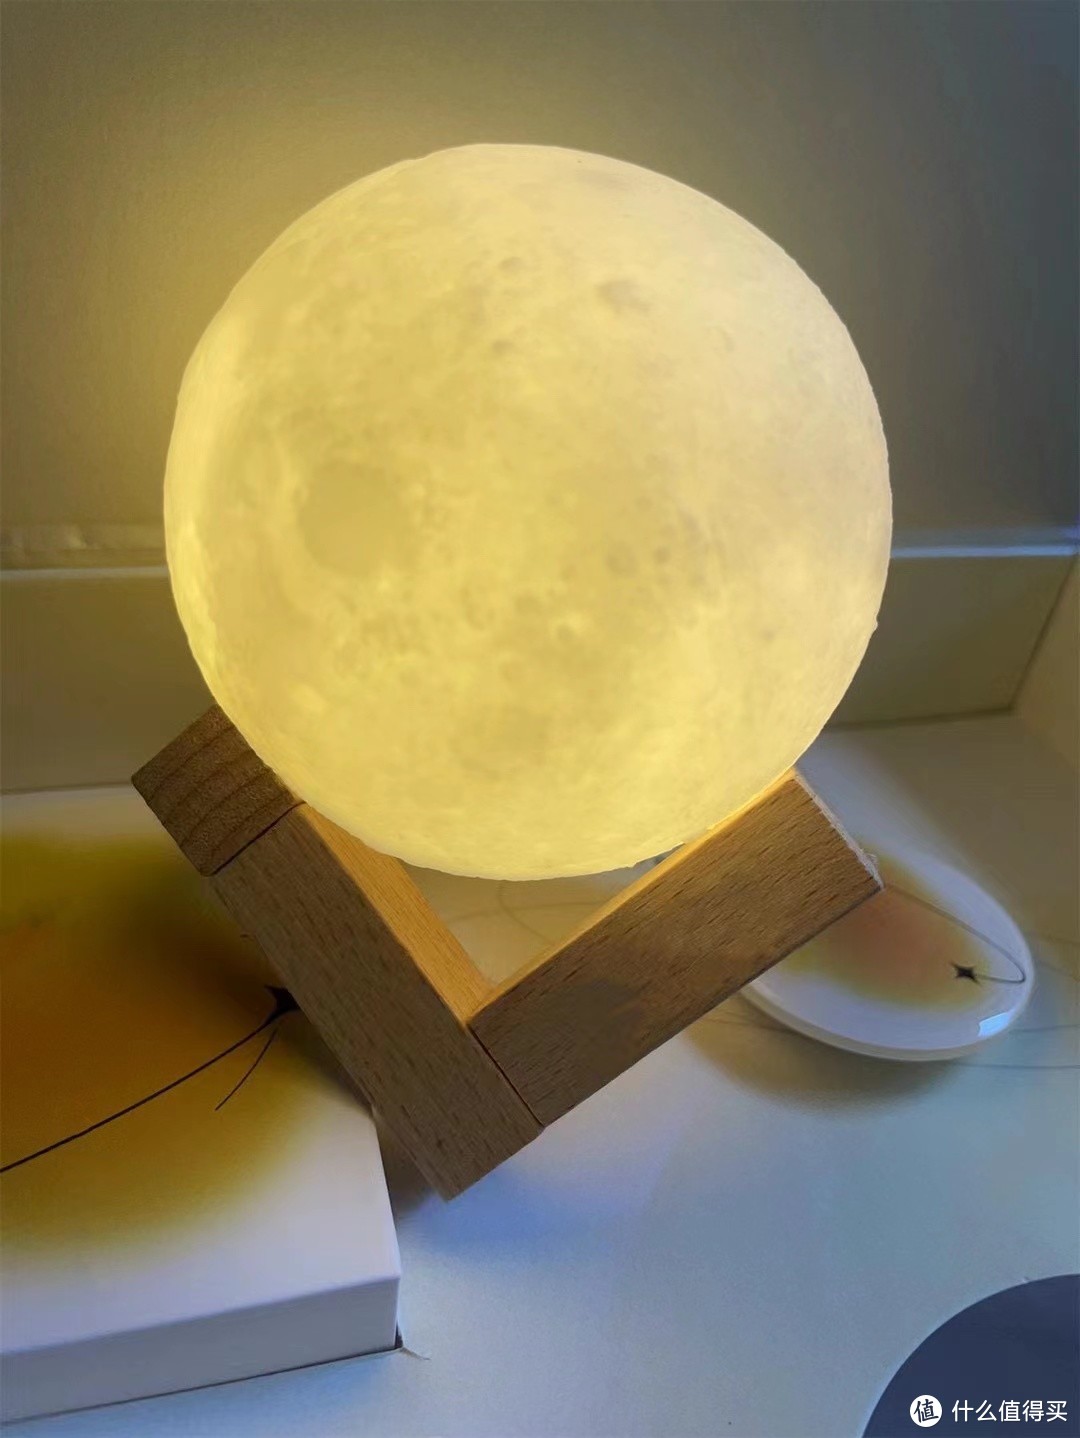 3D打印技术已经这么强了吗？这个月球灯好浪漫！